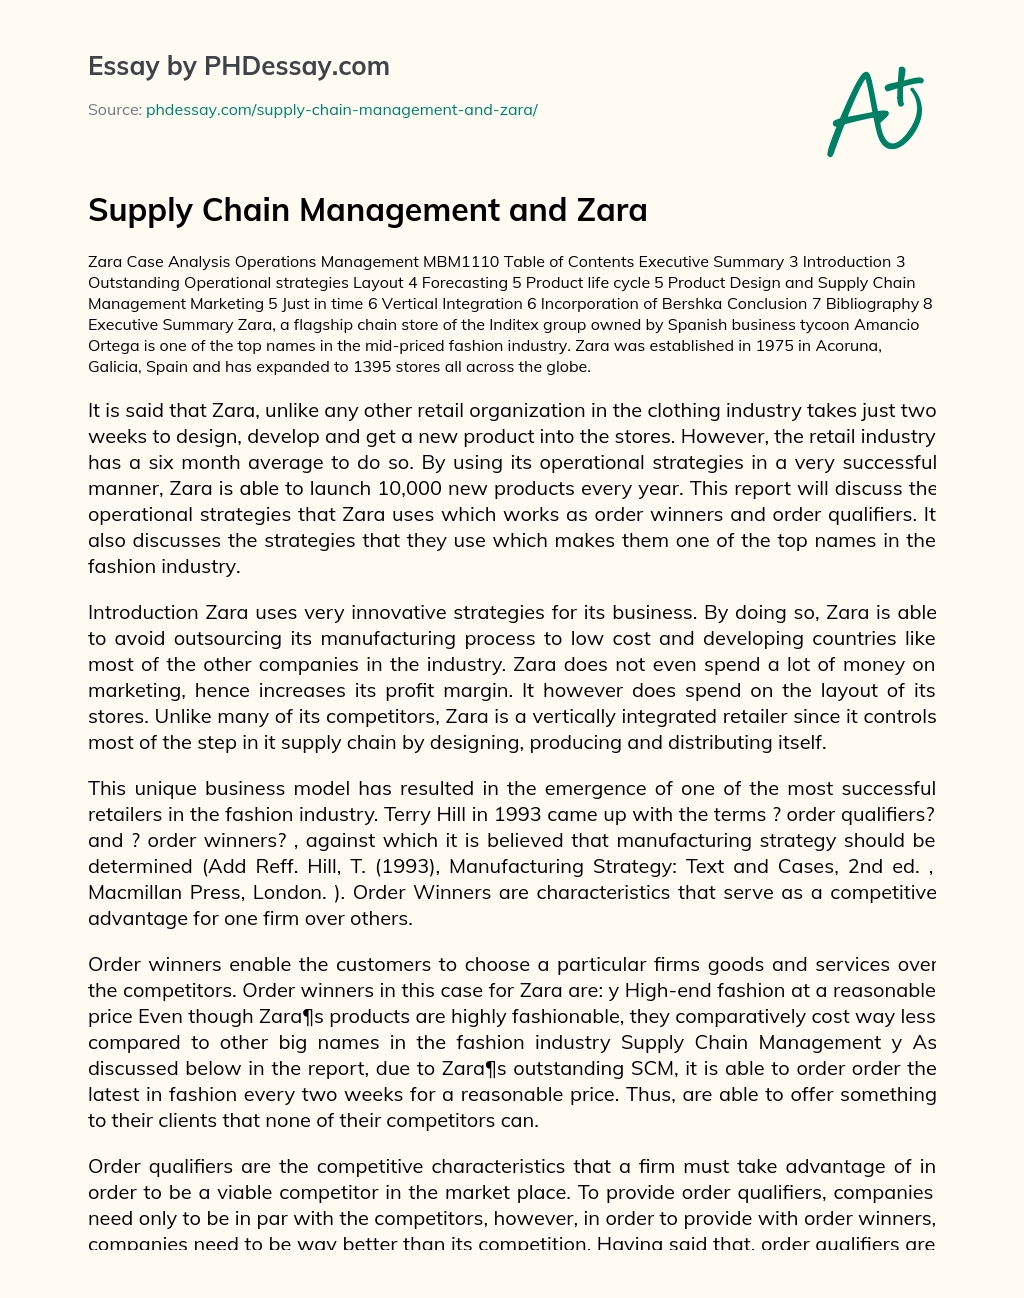 Zara’s Supply Chain Management Model essay